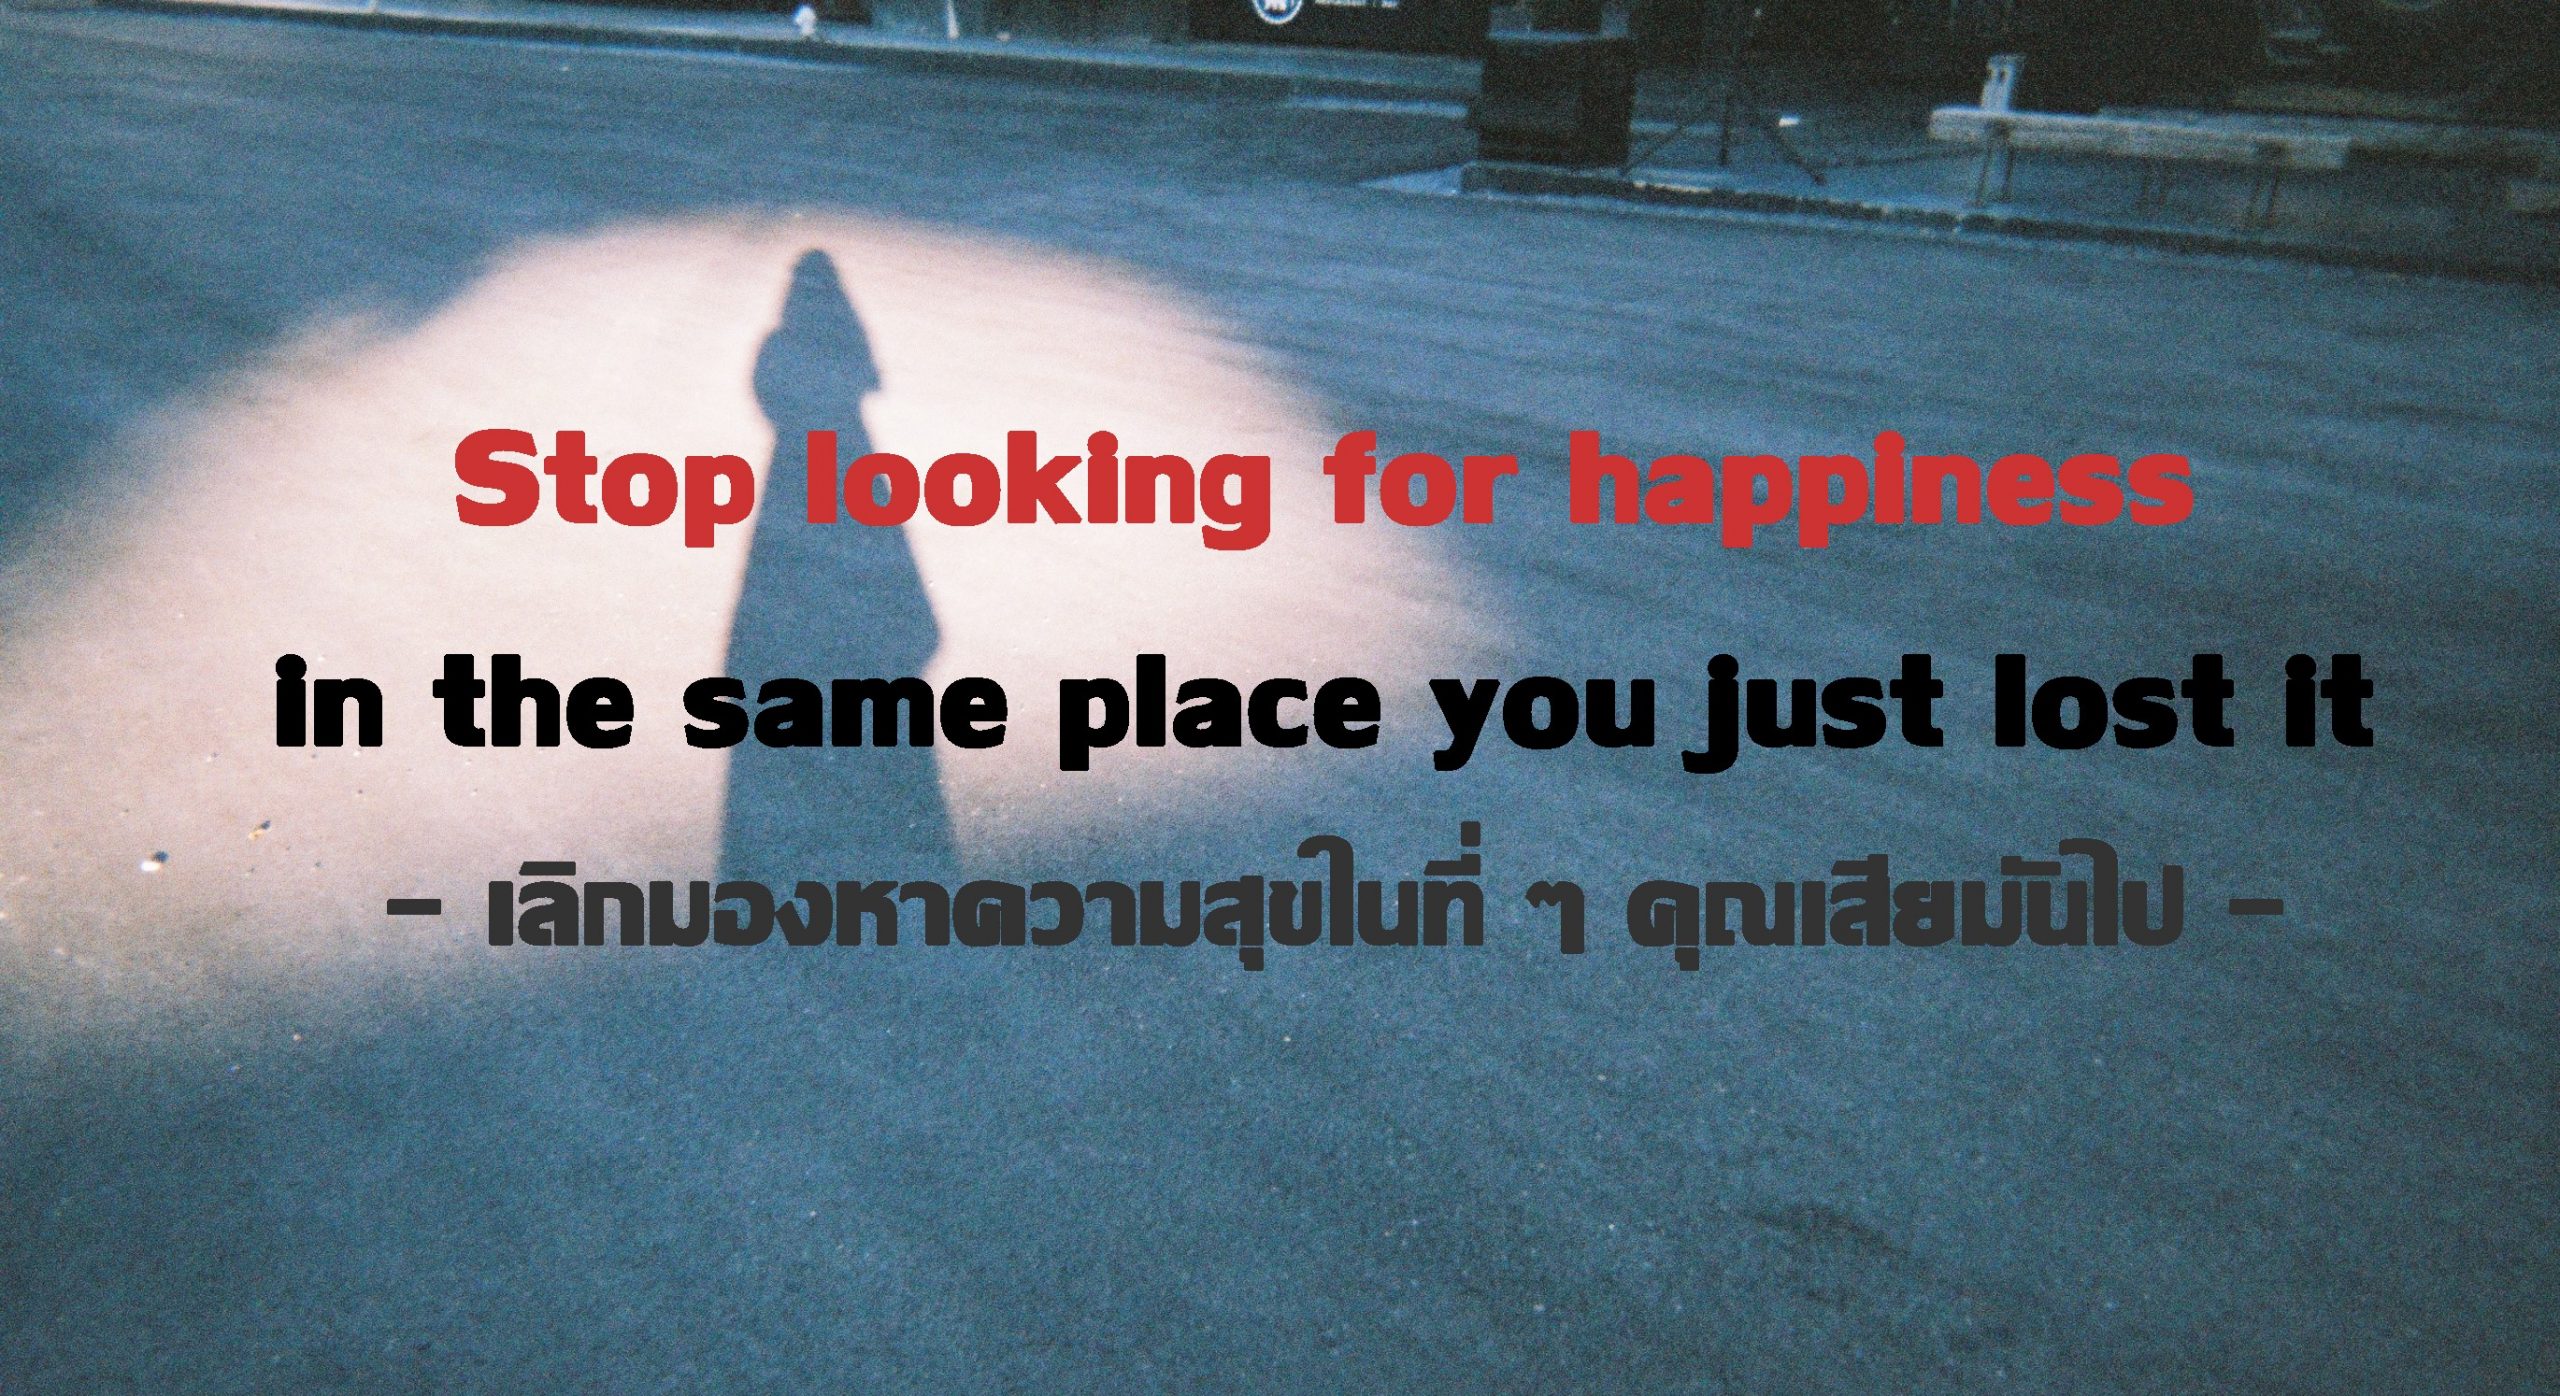 เลิกมองหาความสุขในที่ๆ คุณเสียมันไป